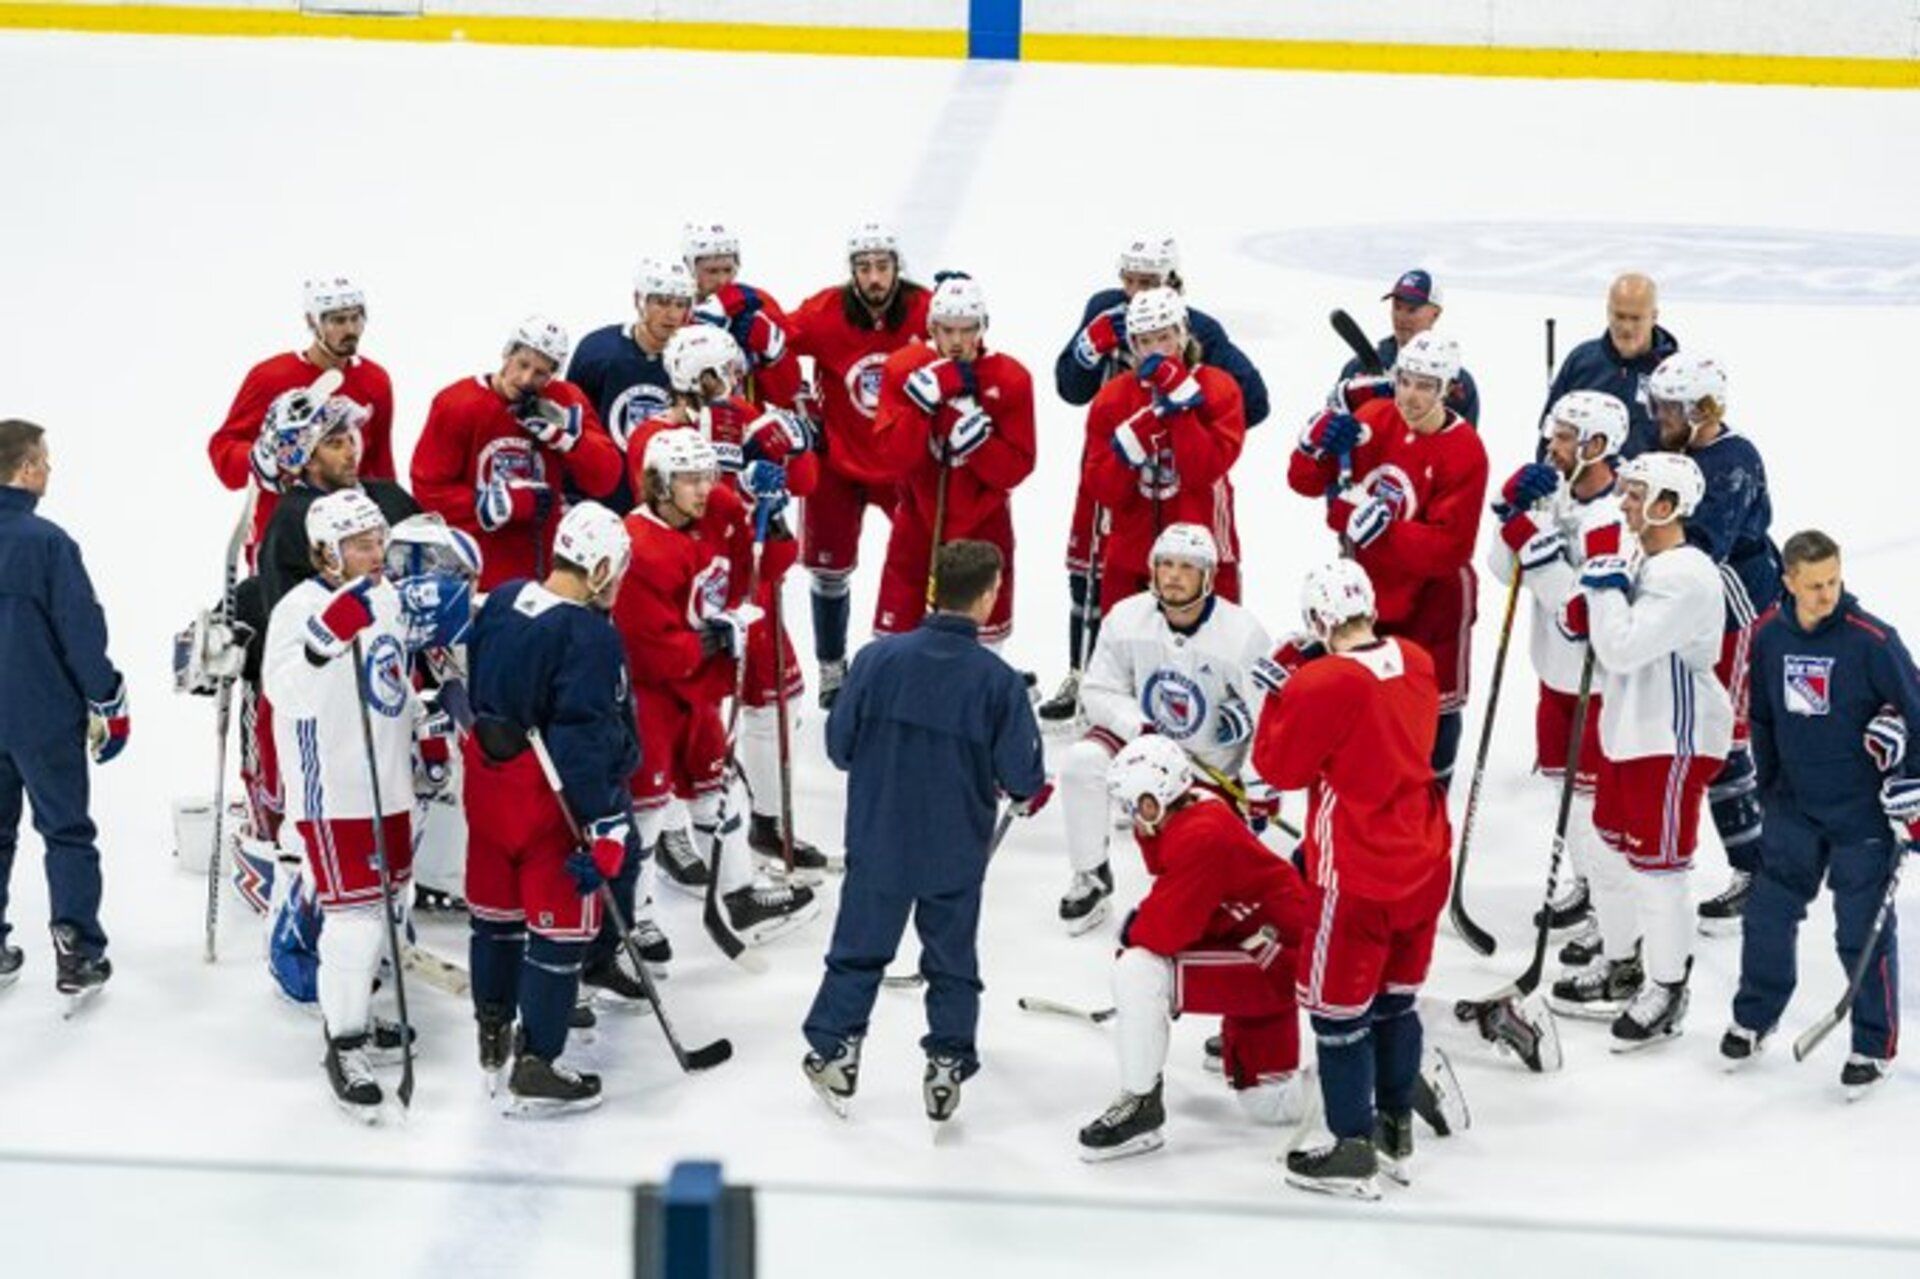 Сколько периодов в хоккей прогноз на хоккей россия сша